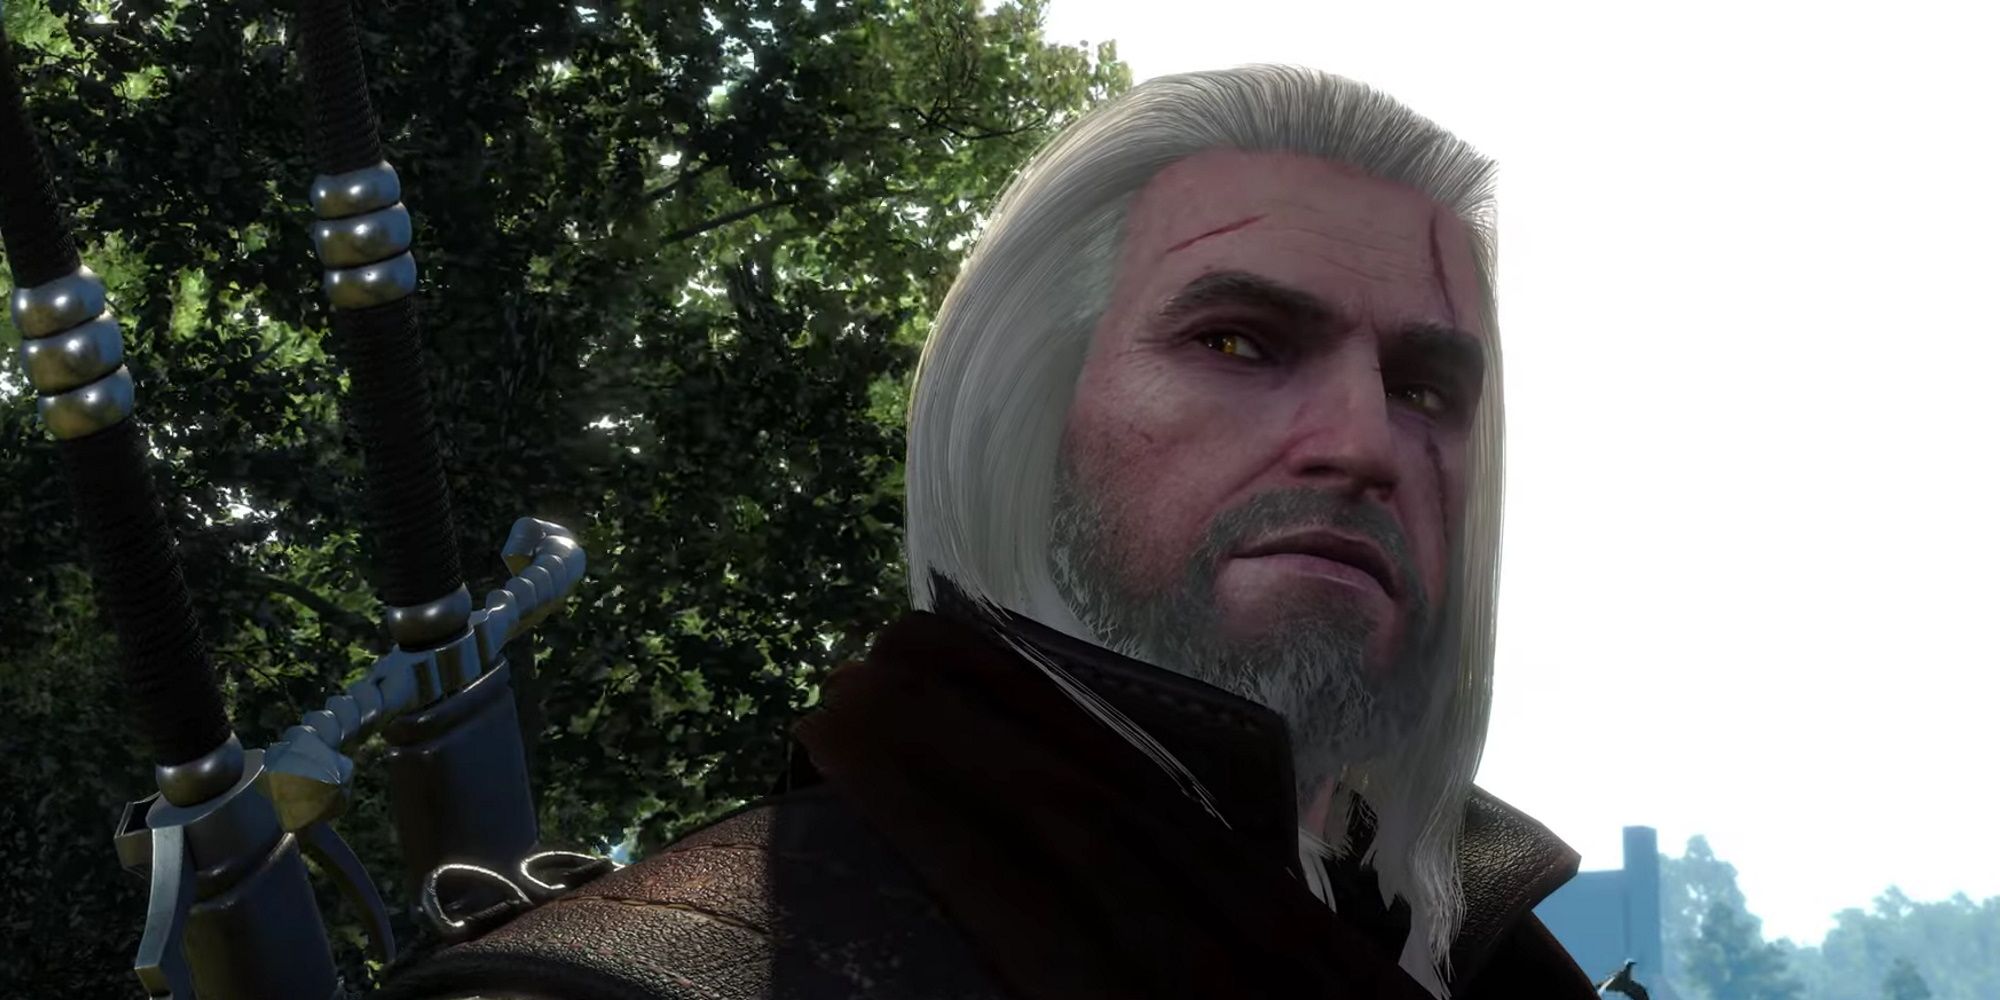 Witcher 3 Geralt - via xLetalis on YouTube